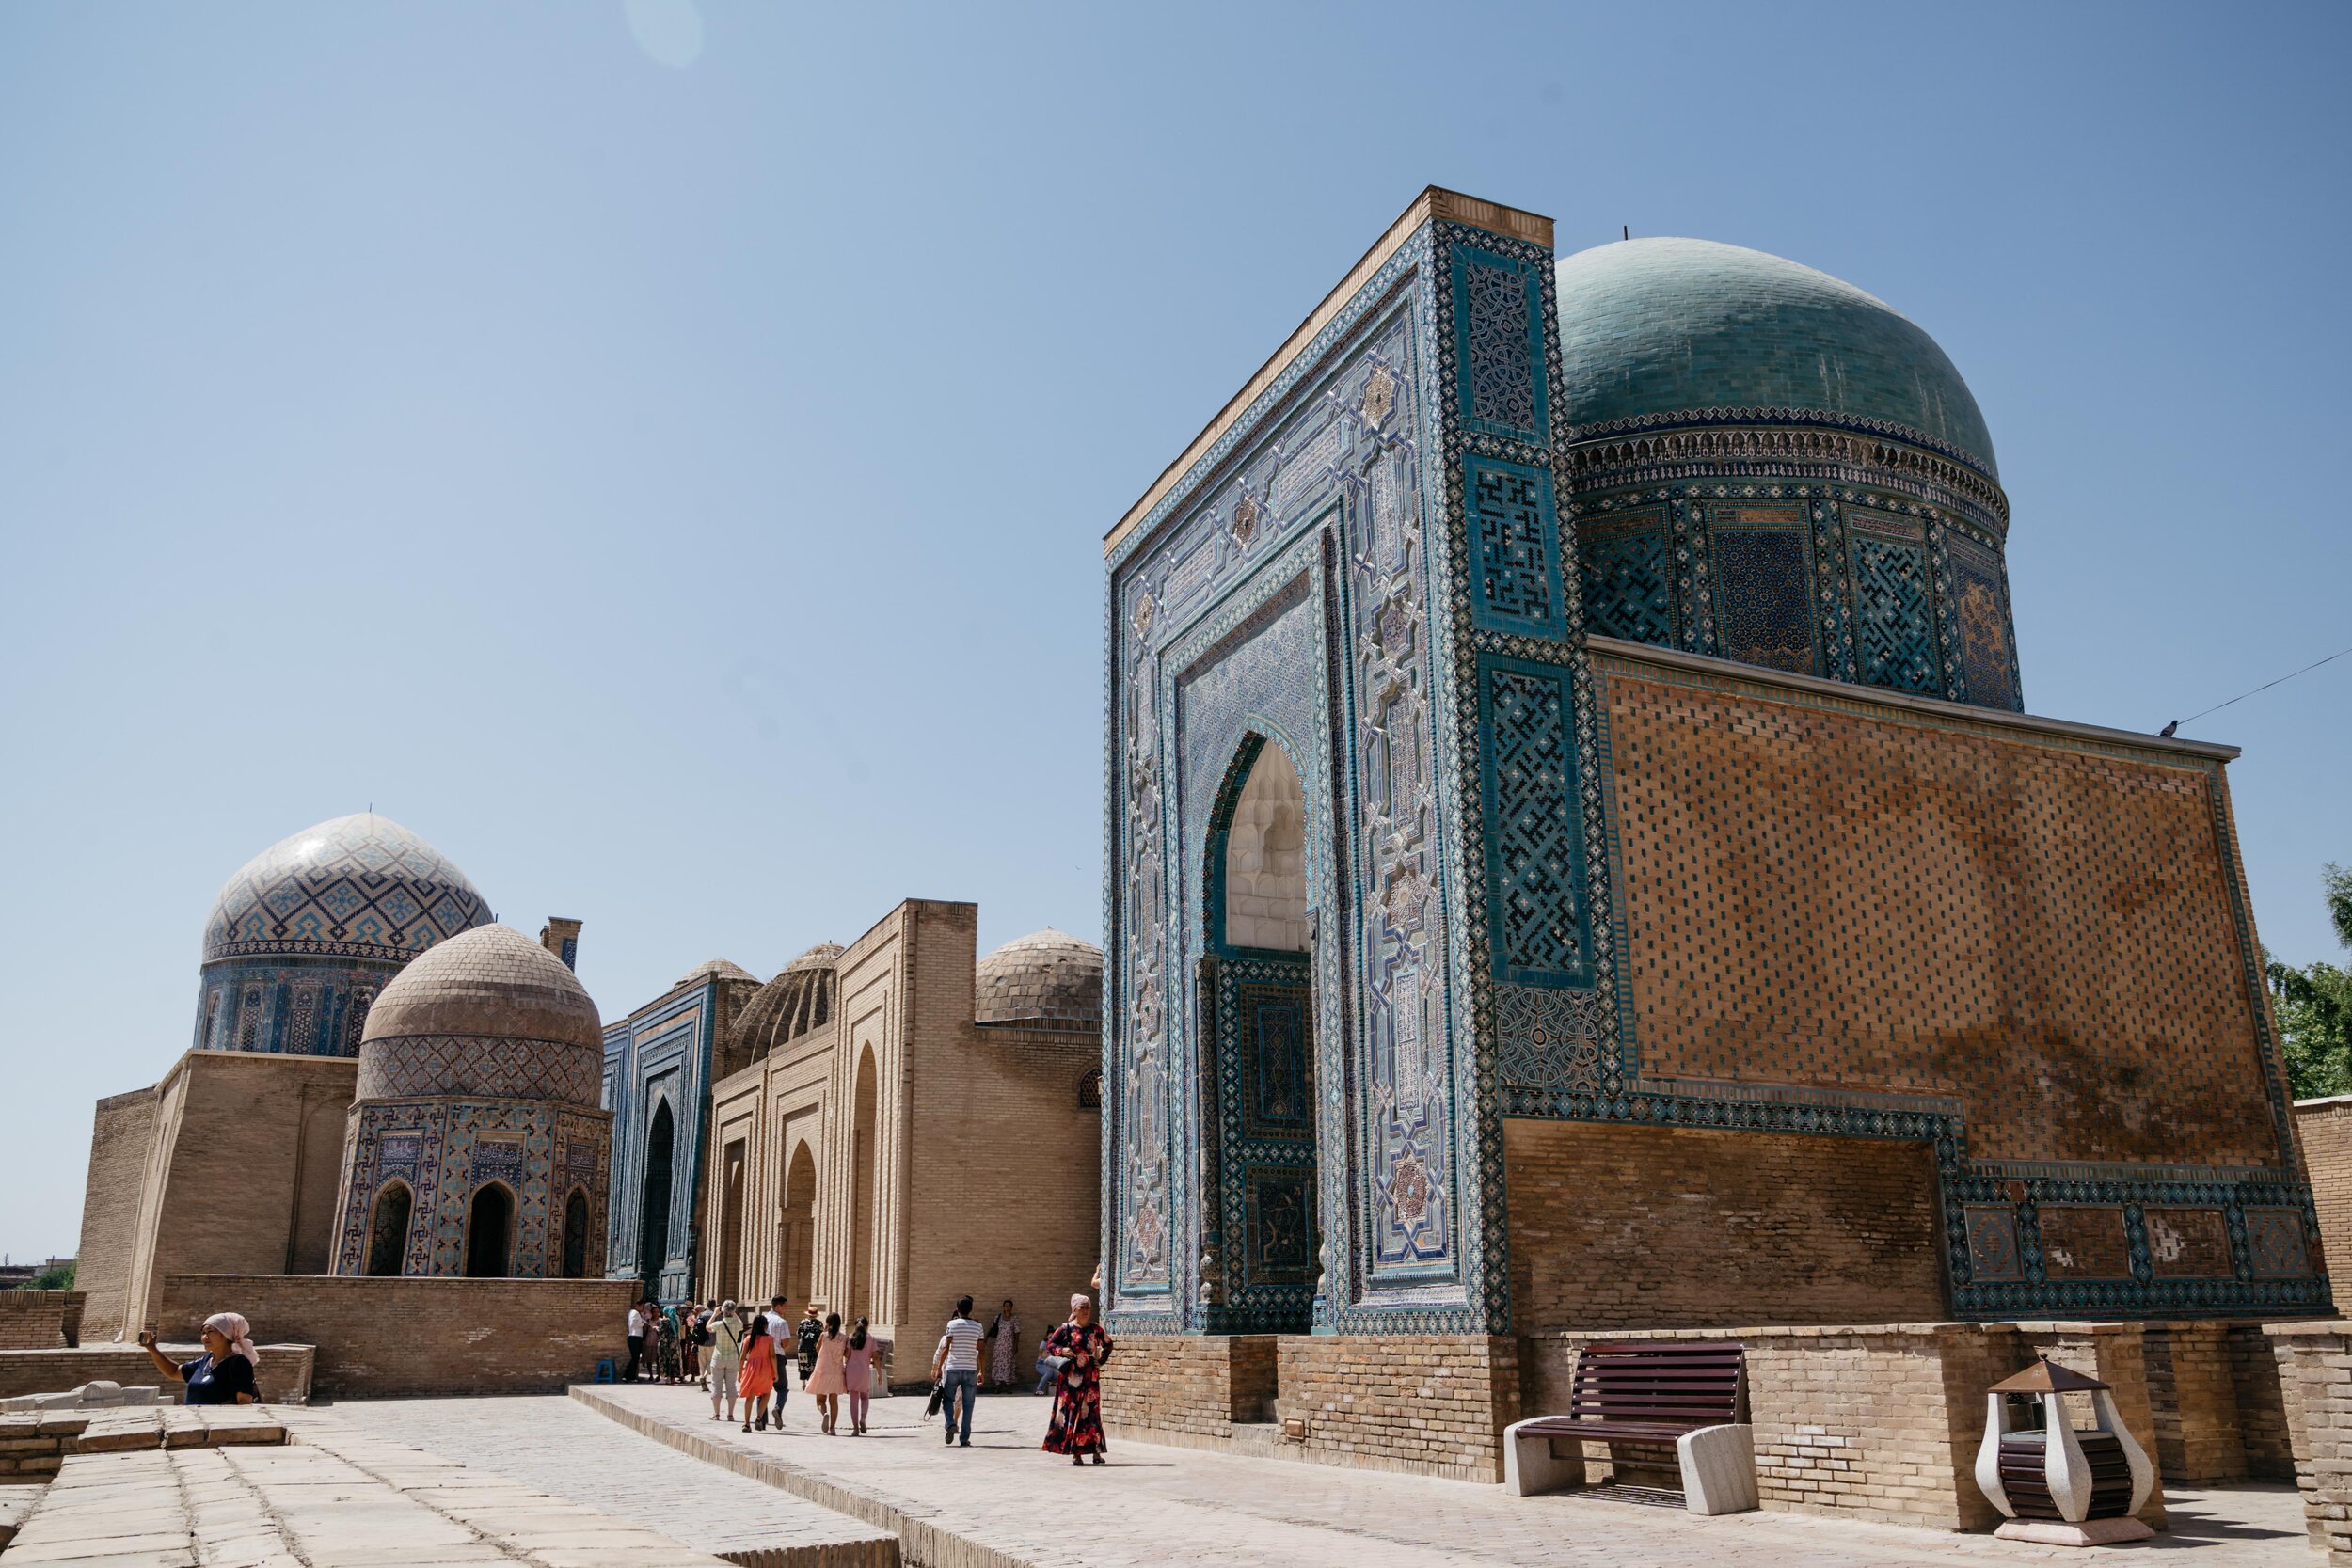  The Shah-i-Zinda tomb complex 